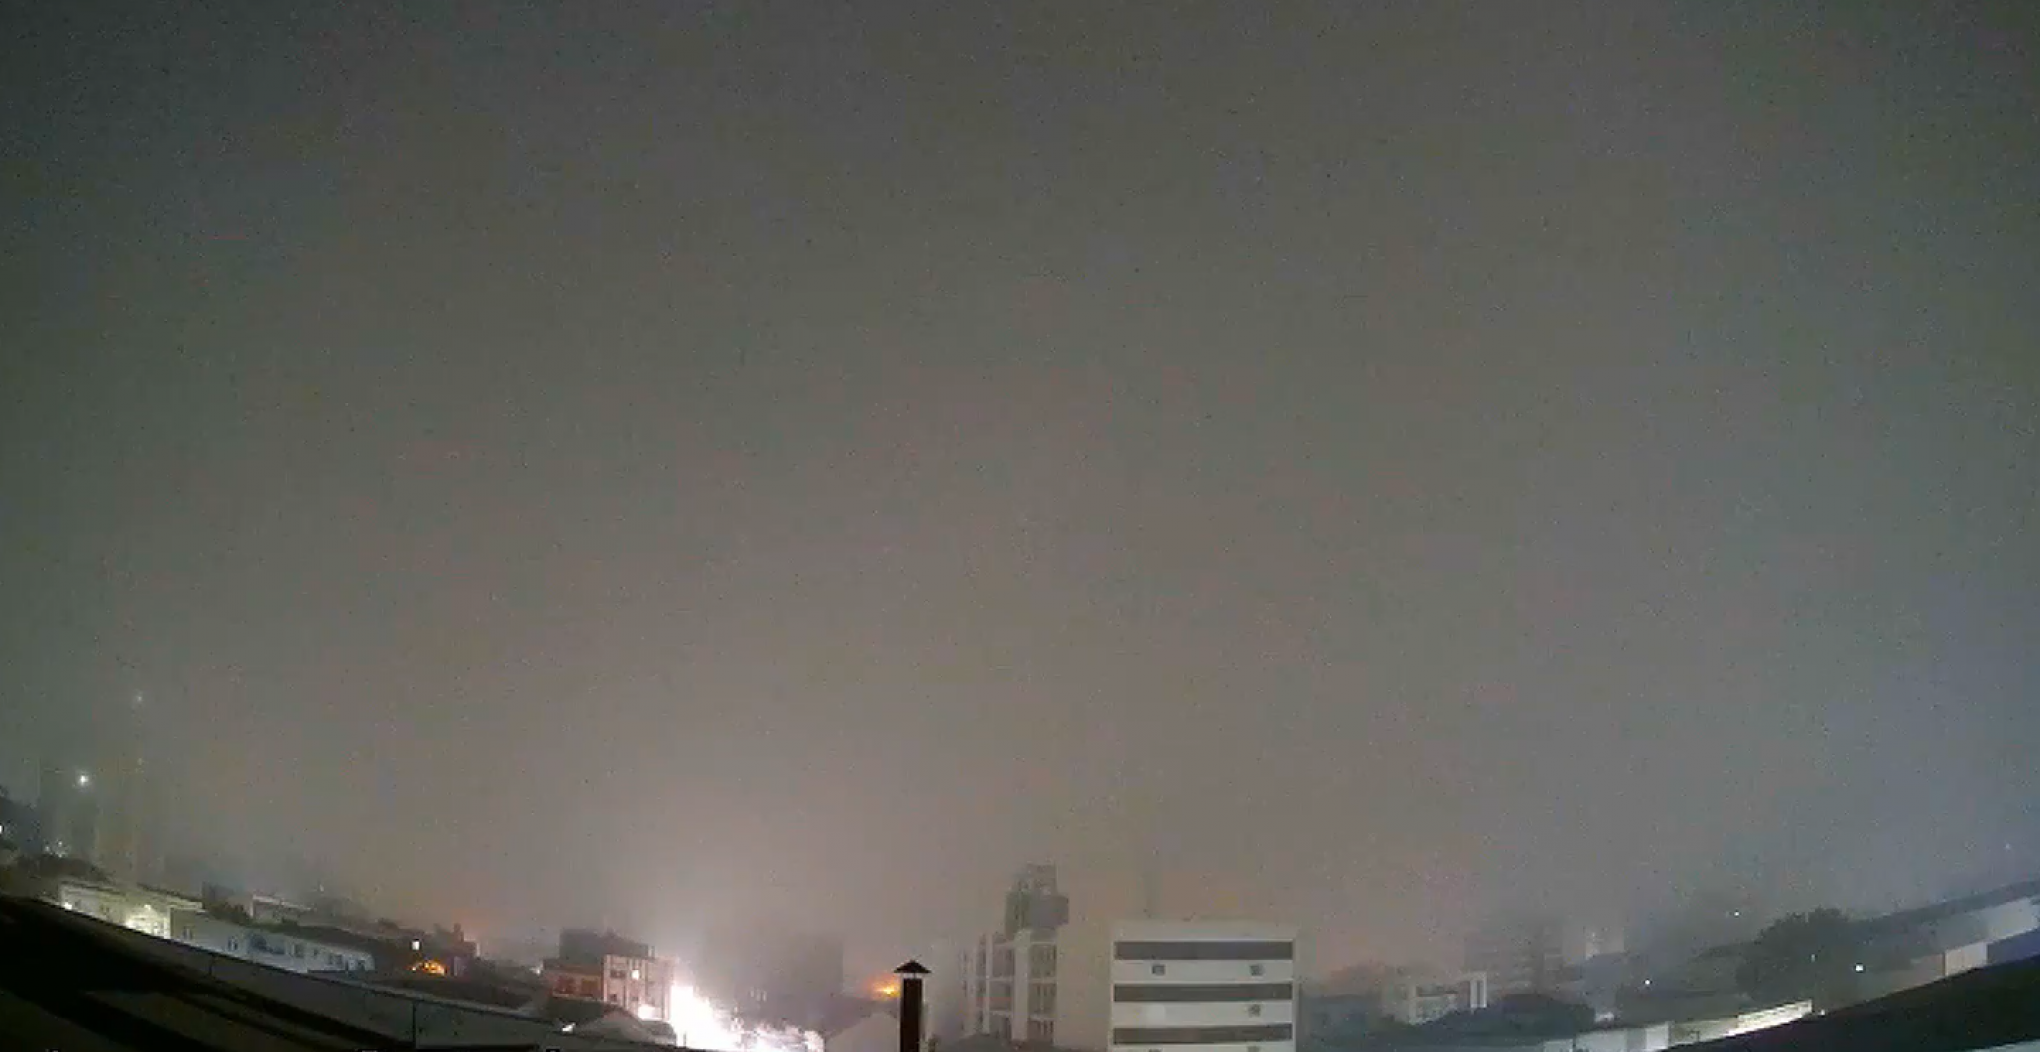 "Ocorreu percepção da comunidade de que seria ocorrência de neve": Vídeo flagra forte neblina em Taquara